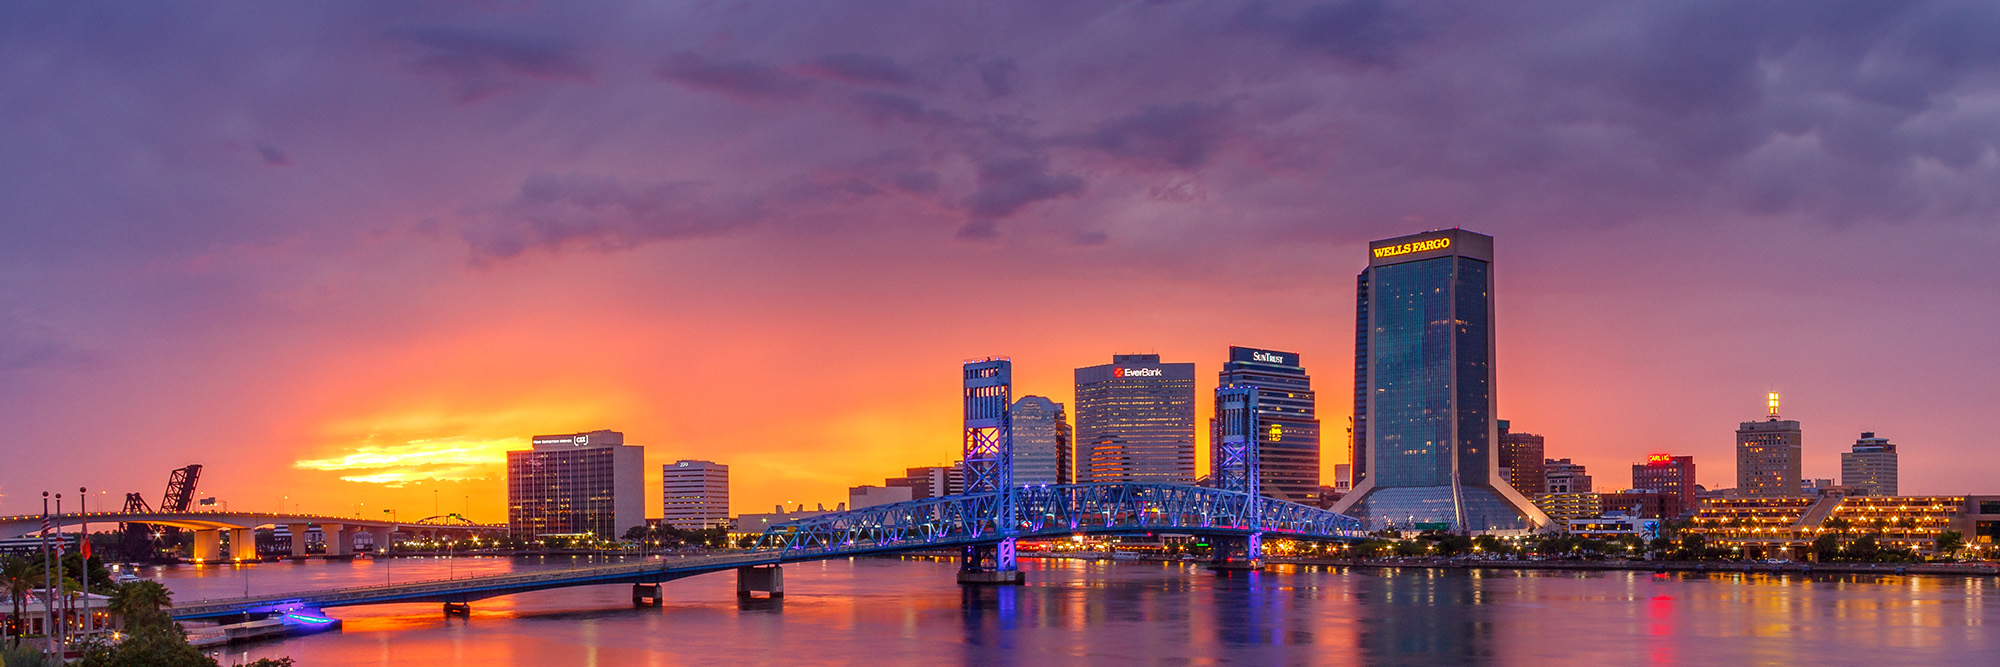 Jacksonville, Florida sunset